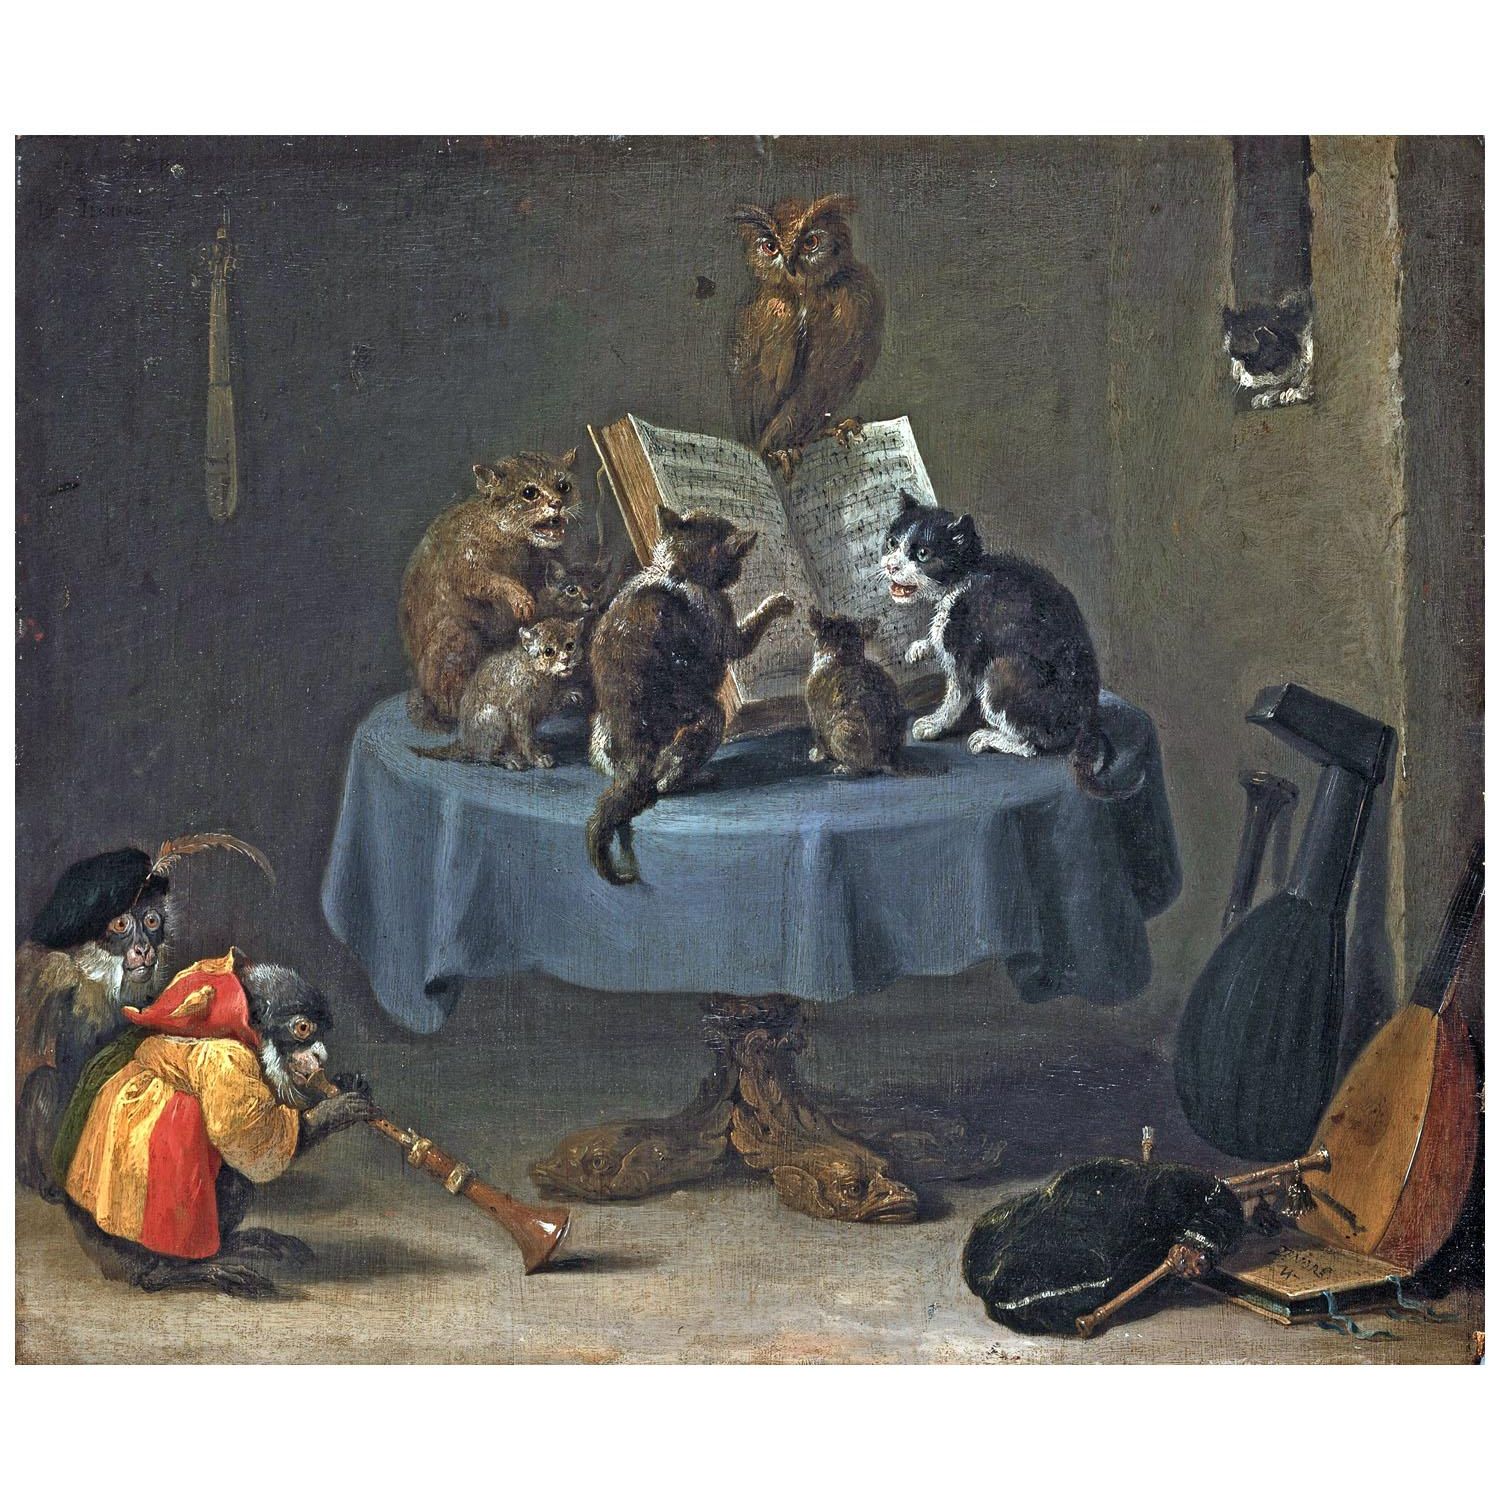 David Teniers II. The Concert of Cats. 1650. Alte Pinakothek Munchen